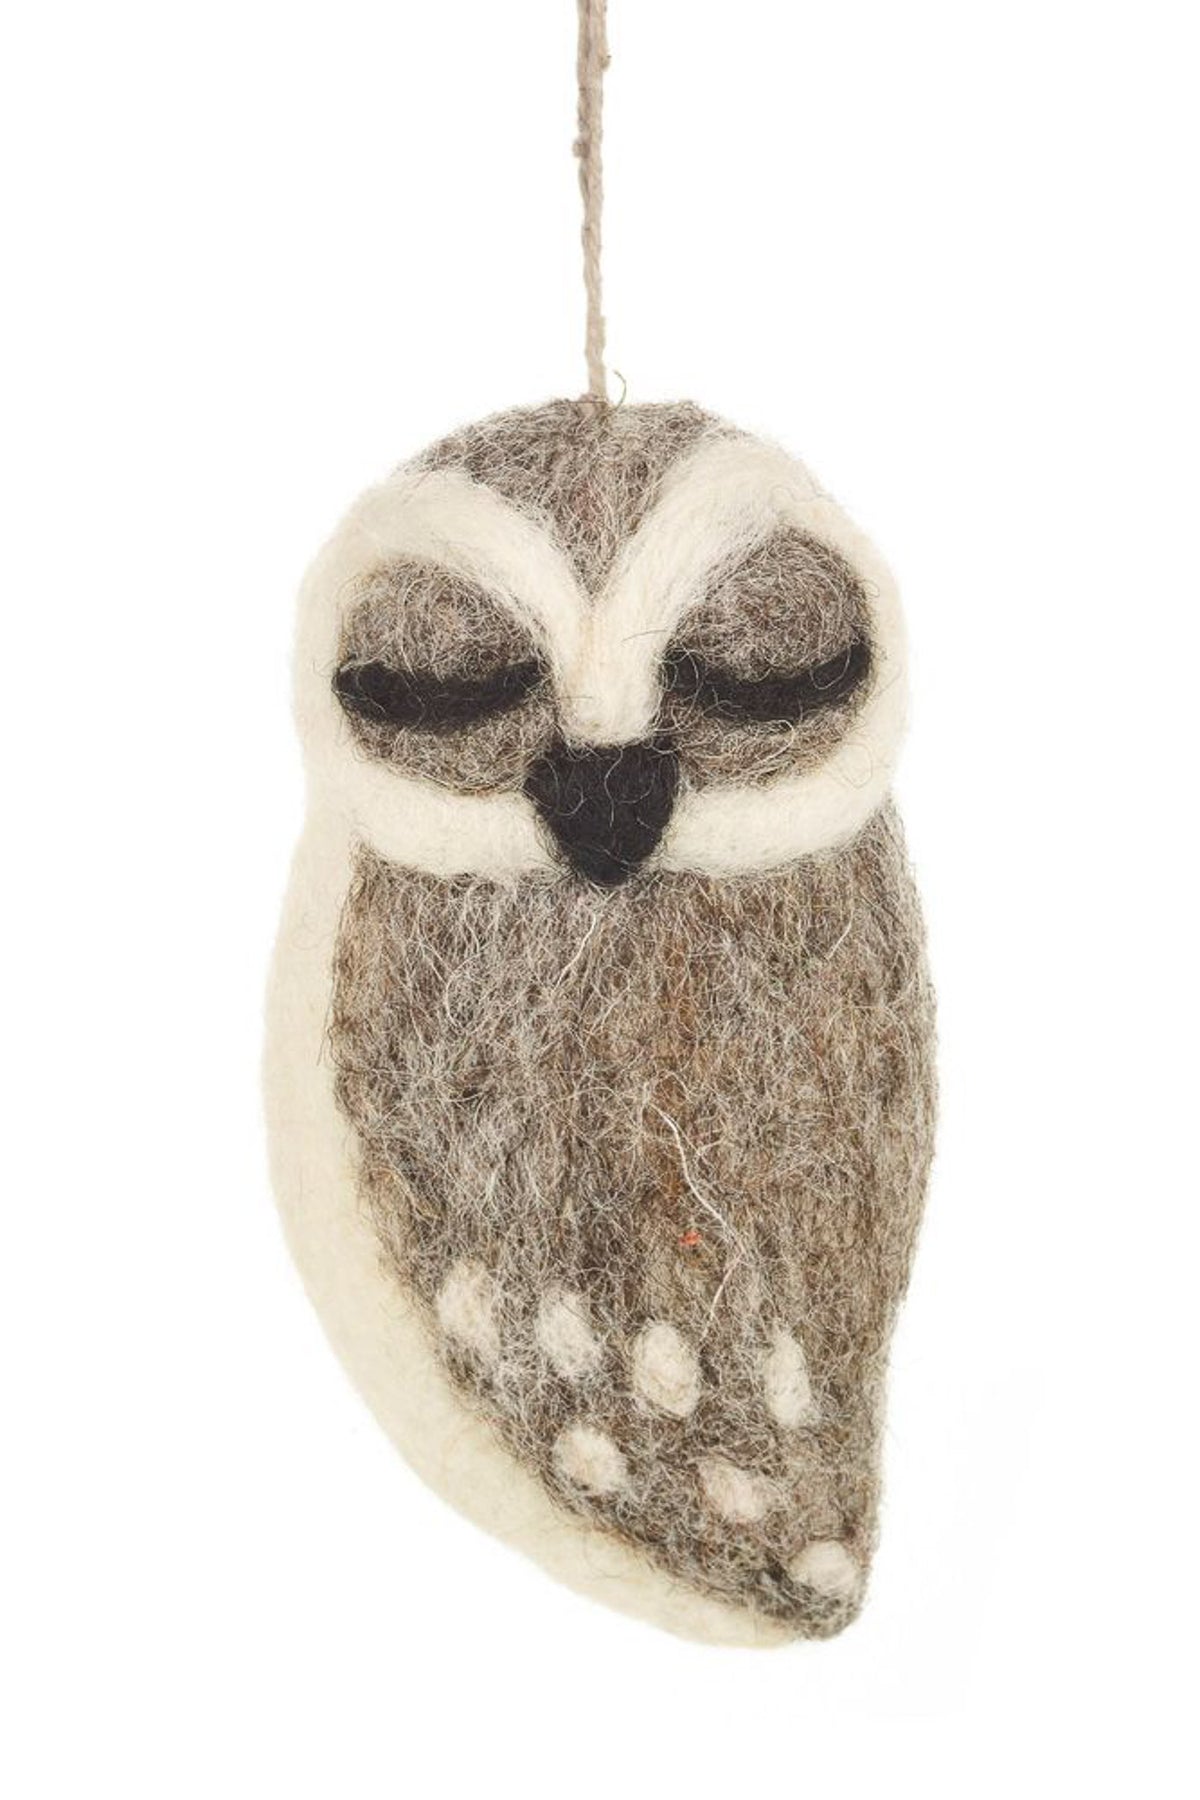 Felt So Good Grey Owl Felt Ornament